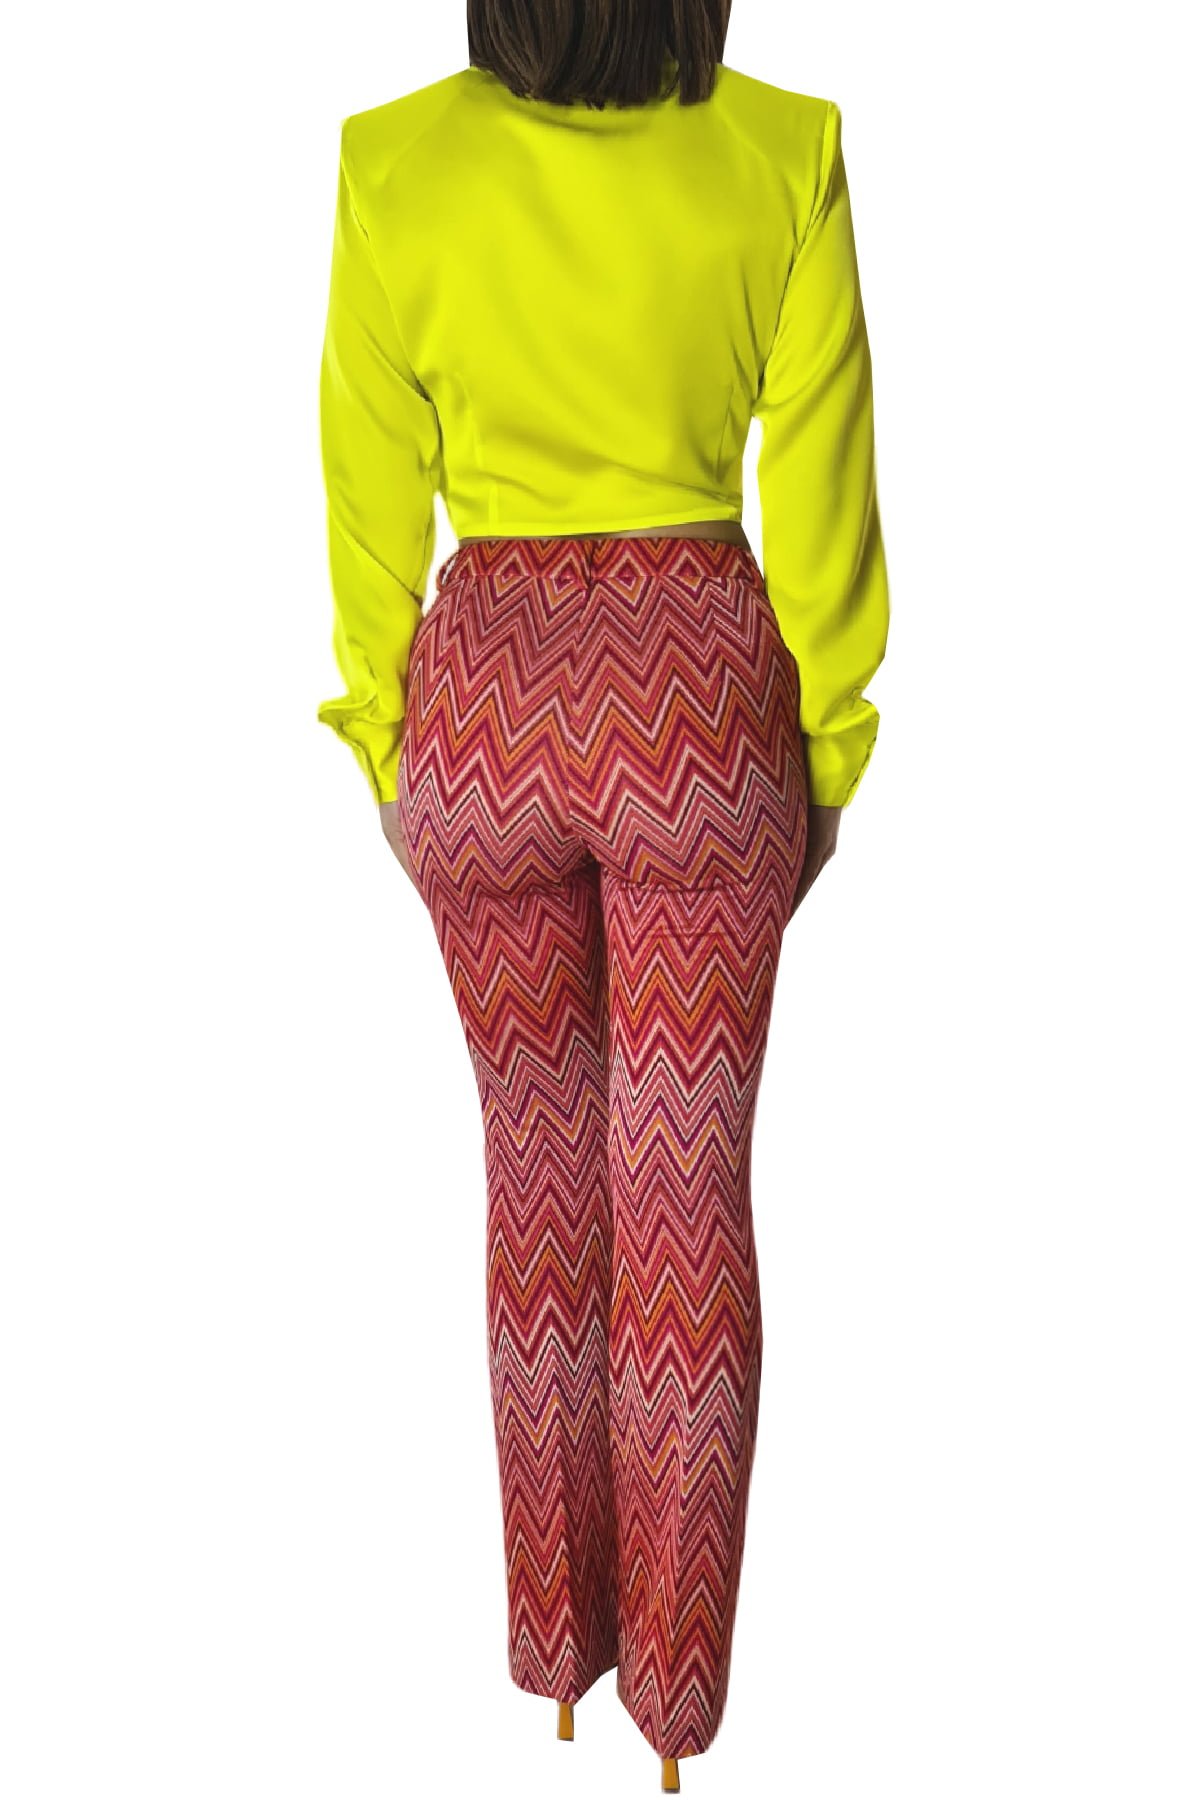 Pantalone donna vita alta a zampa in tessuto maglia con passanti per cintura chiusura bottone